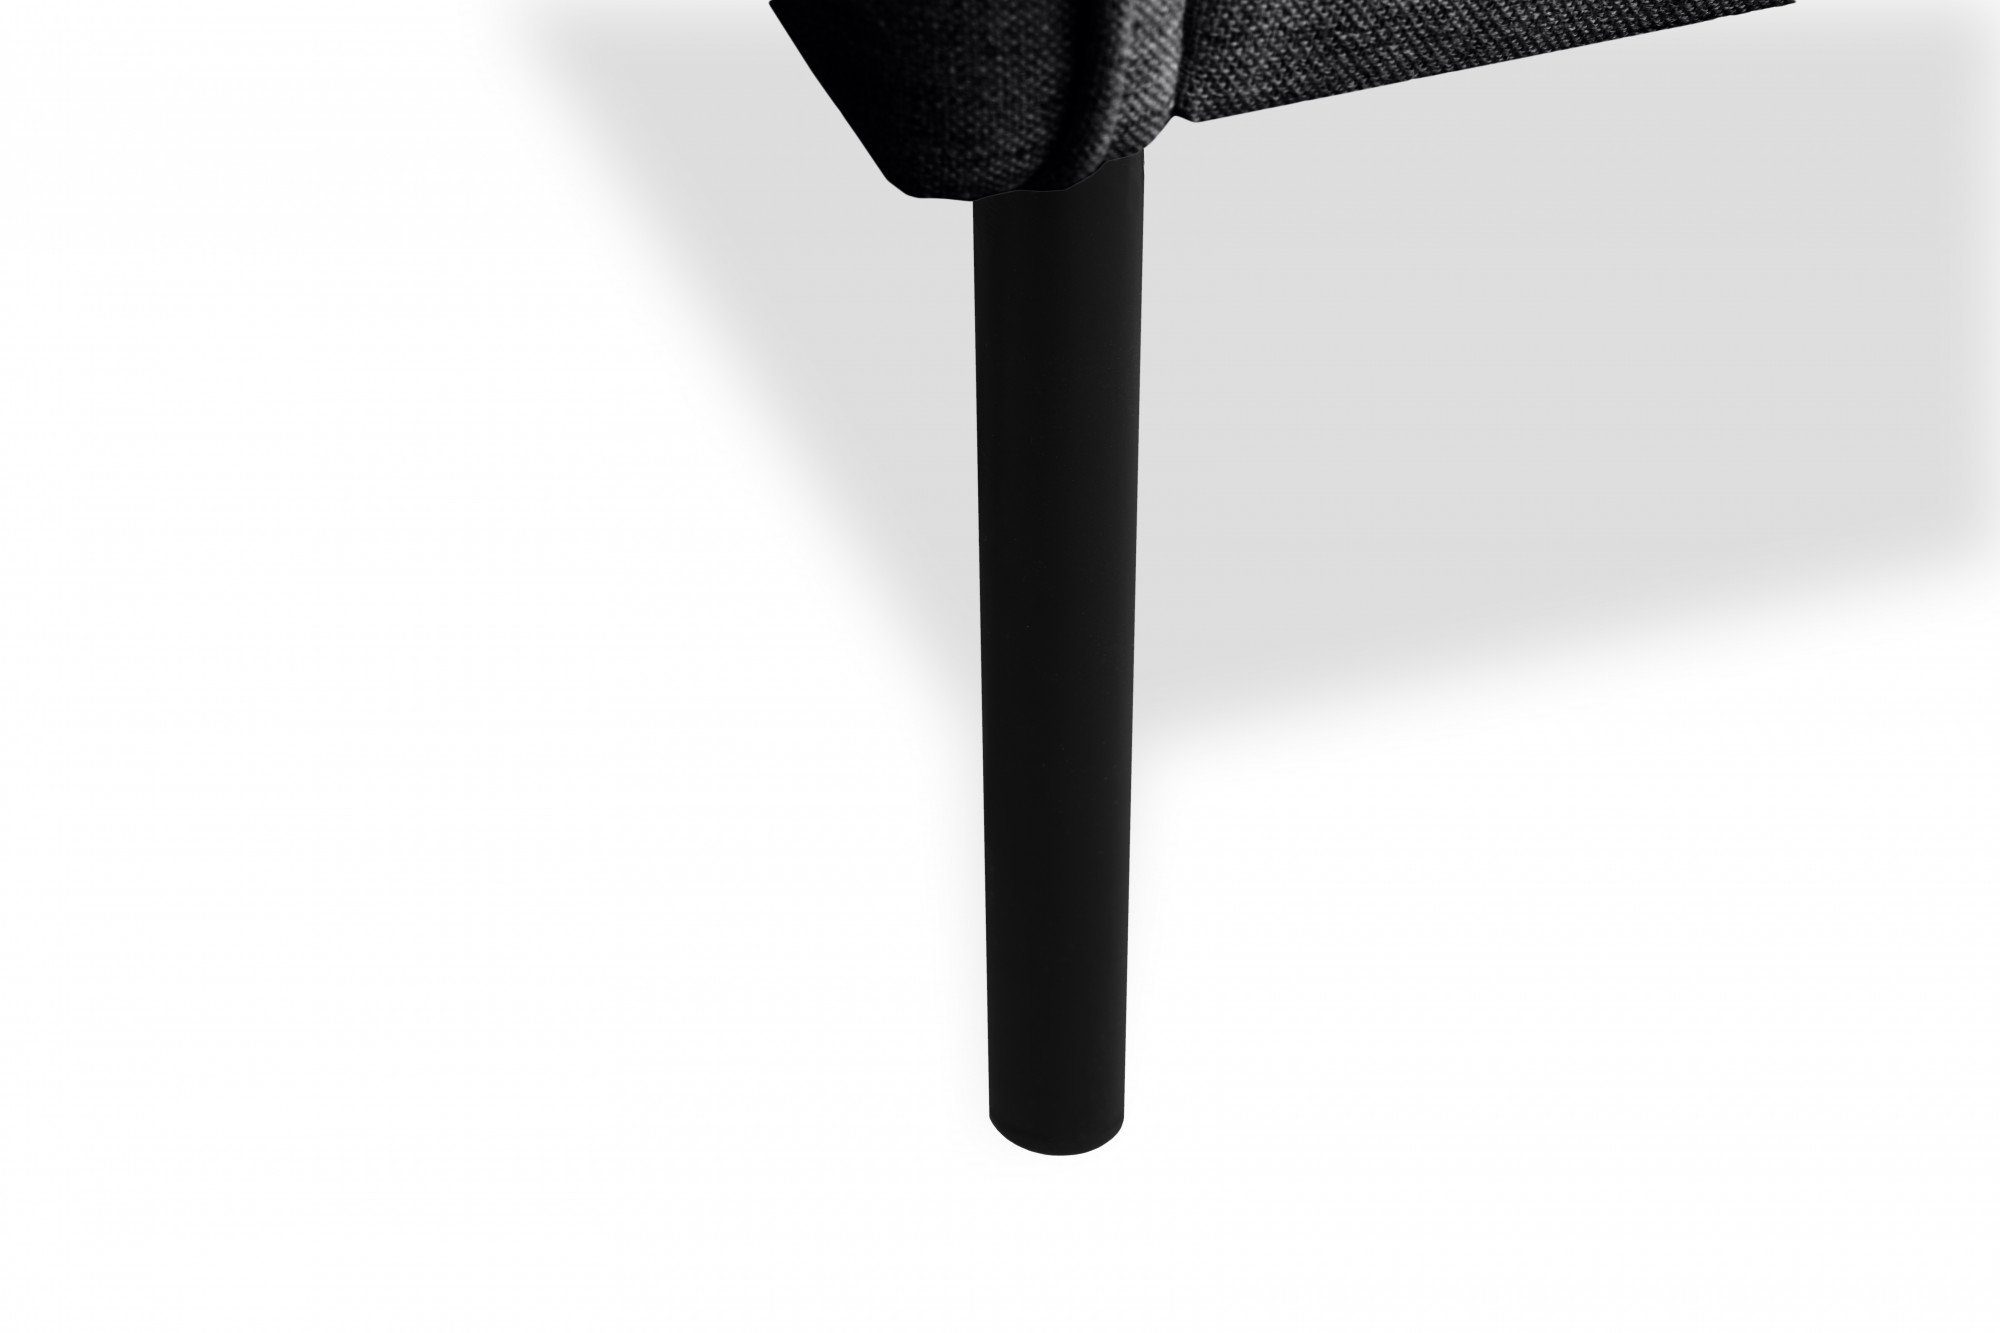 Metallfüßen schlanken minimalistisches Sessel andas auf Skalle, Design